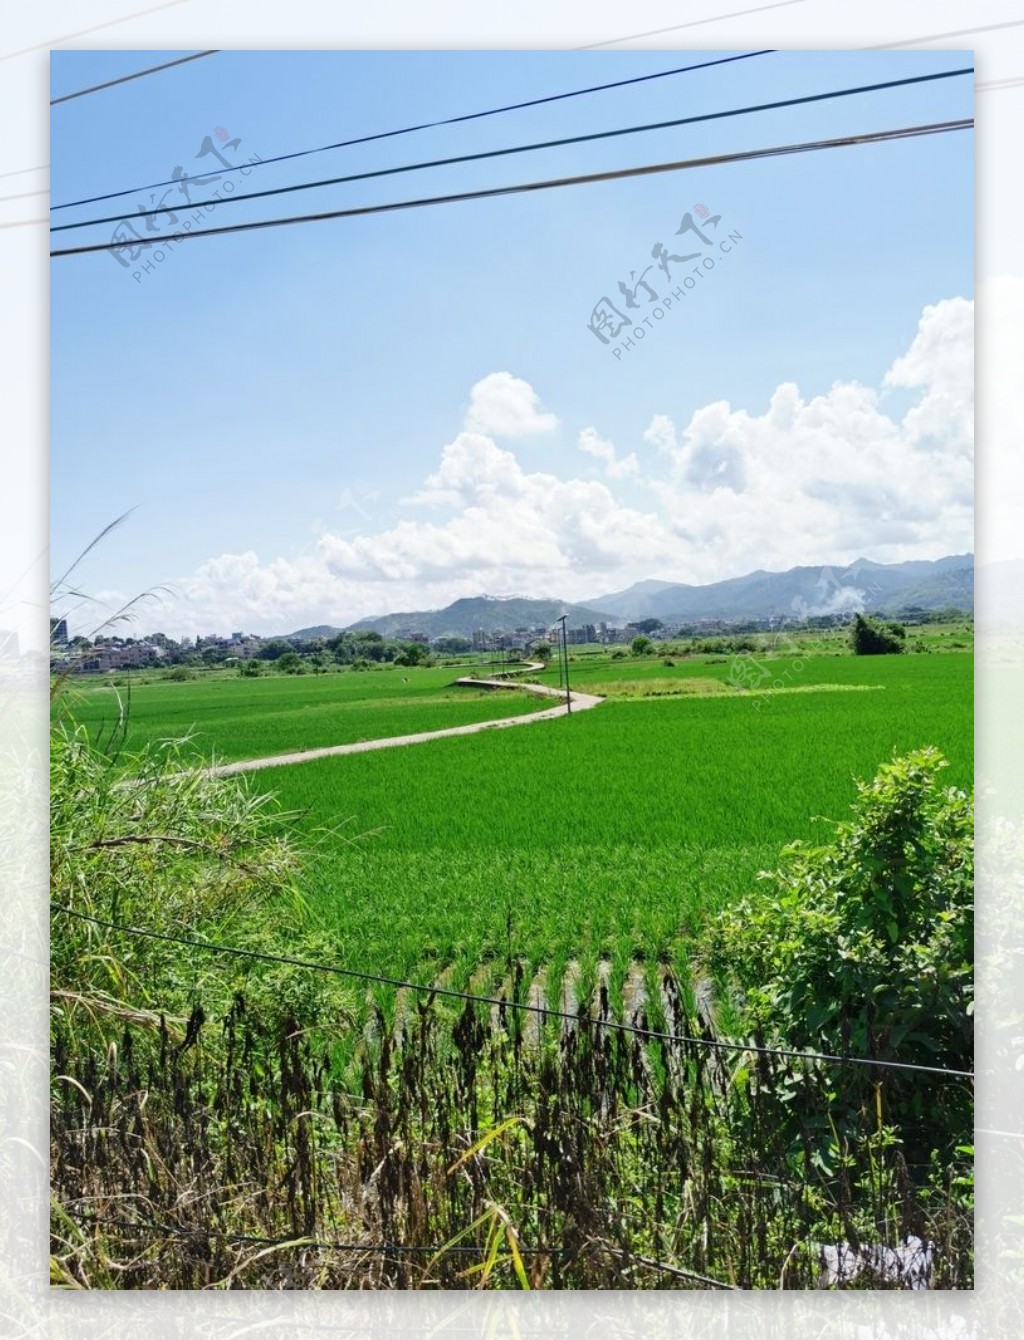 农村水稻种植风景图片